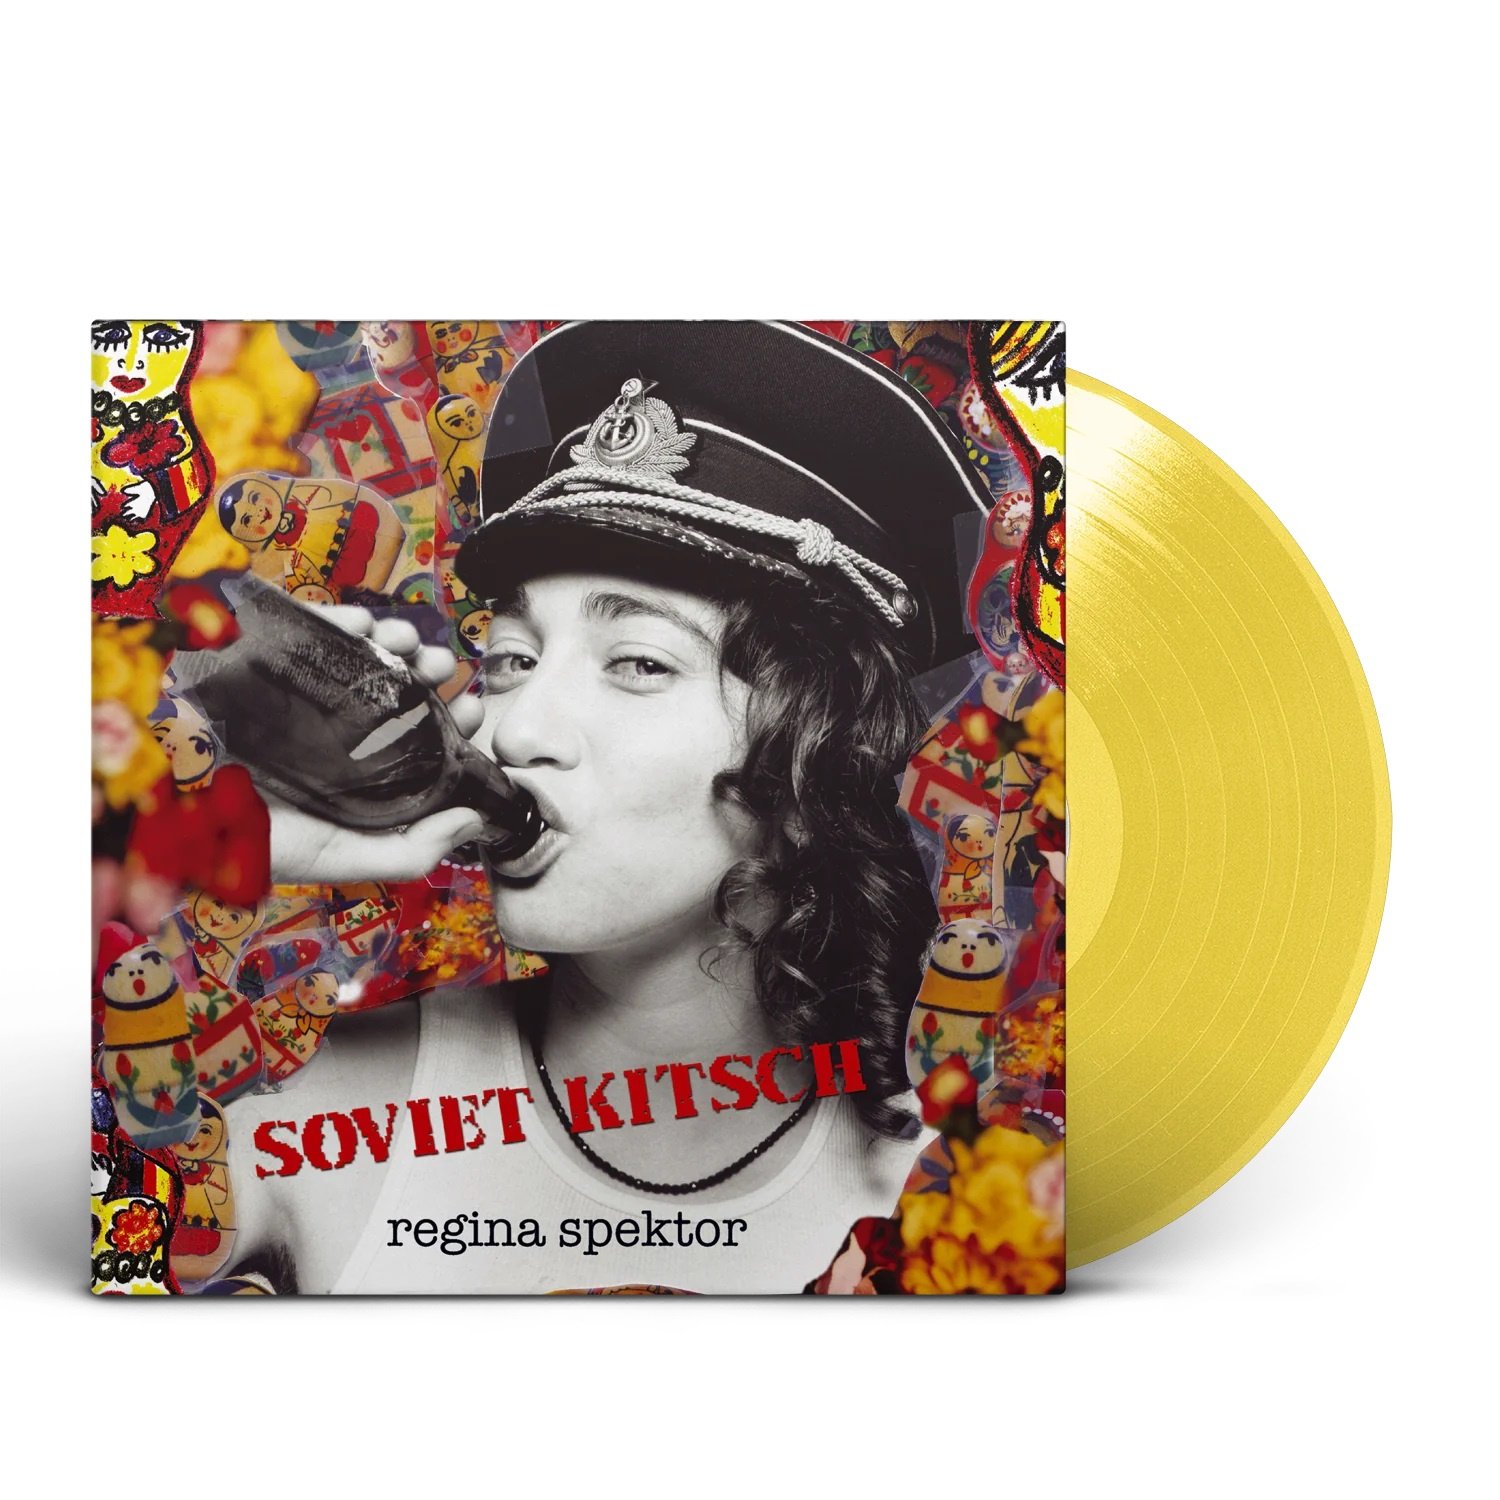 SOVIET KITSCH - TELLOW VINYL INDIE EXCLUSIVE LTD. ED.